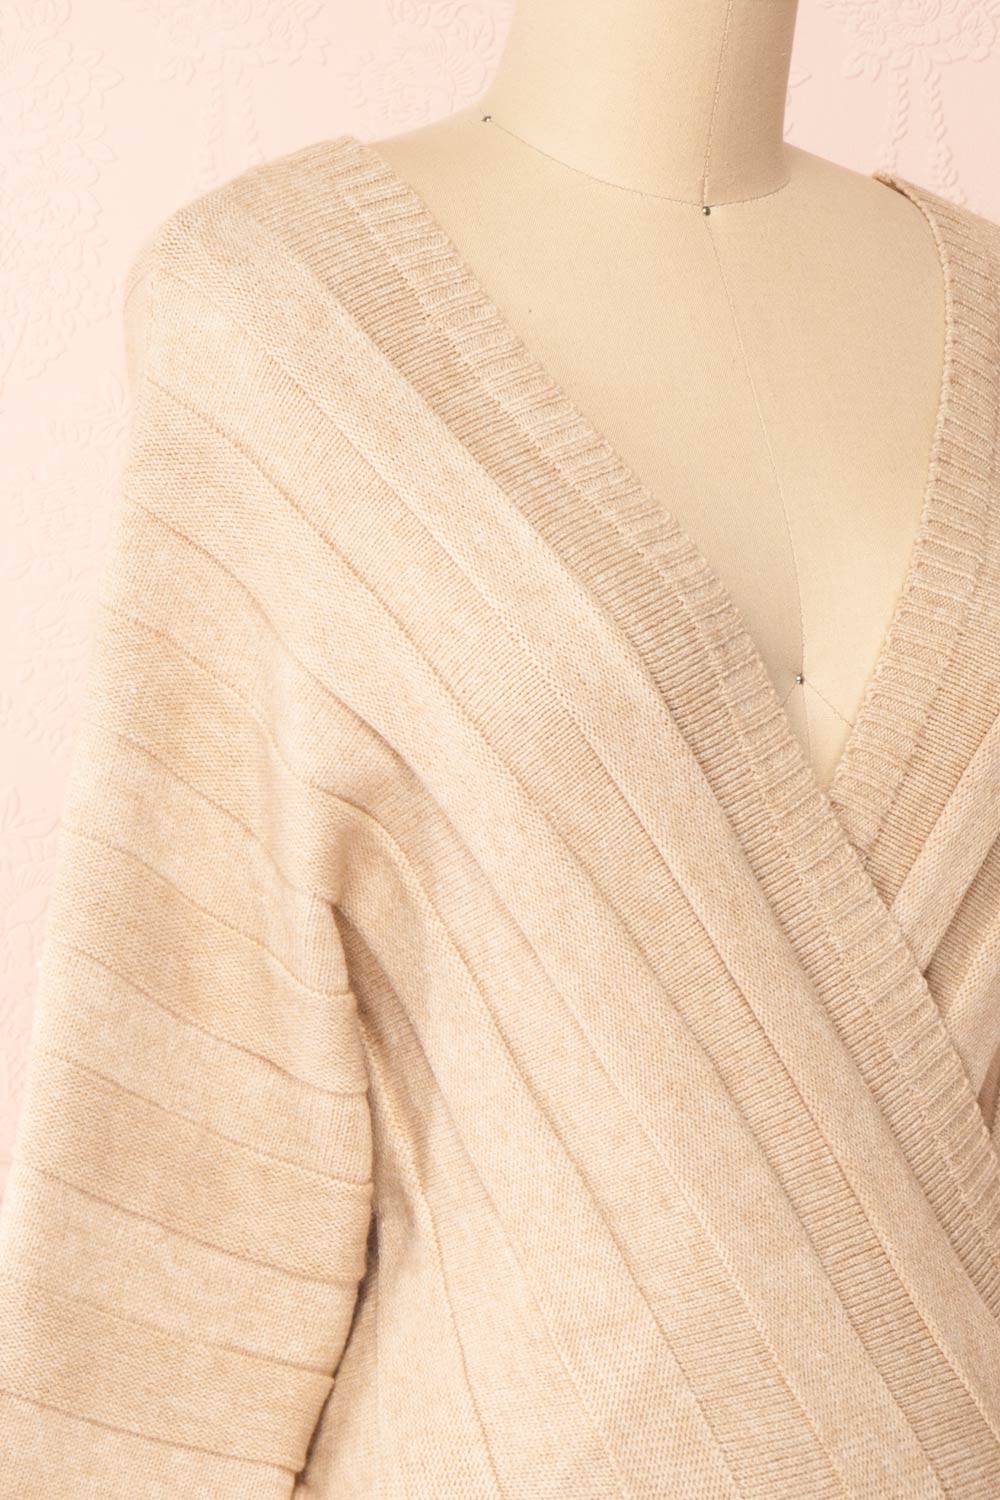 Zora Beige Long Sleeve Faux Wrap Crop Top | Boutique 1861 side close-up